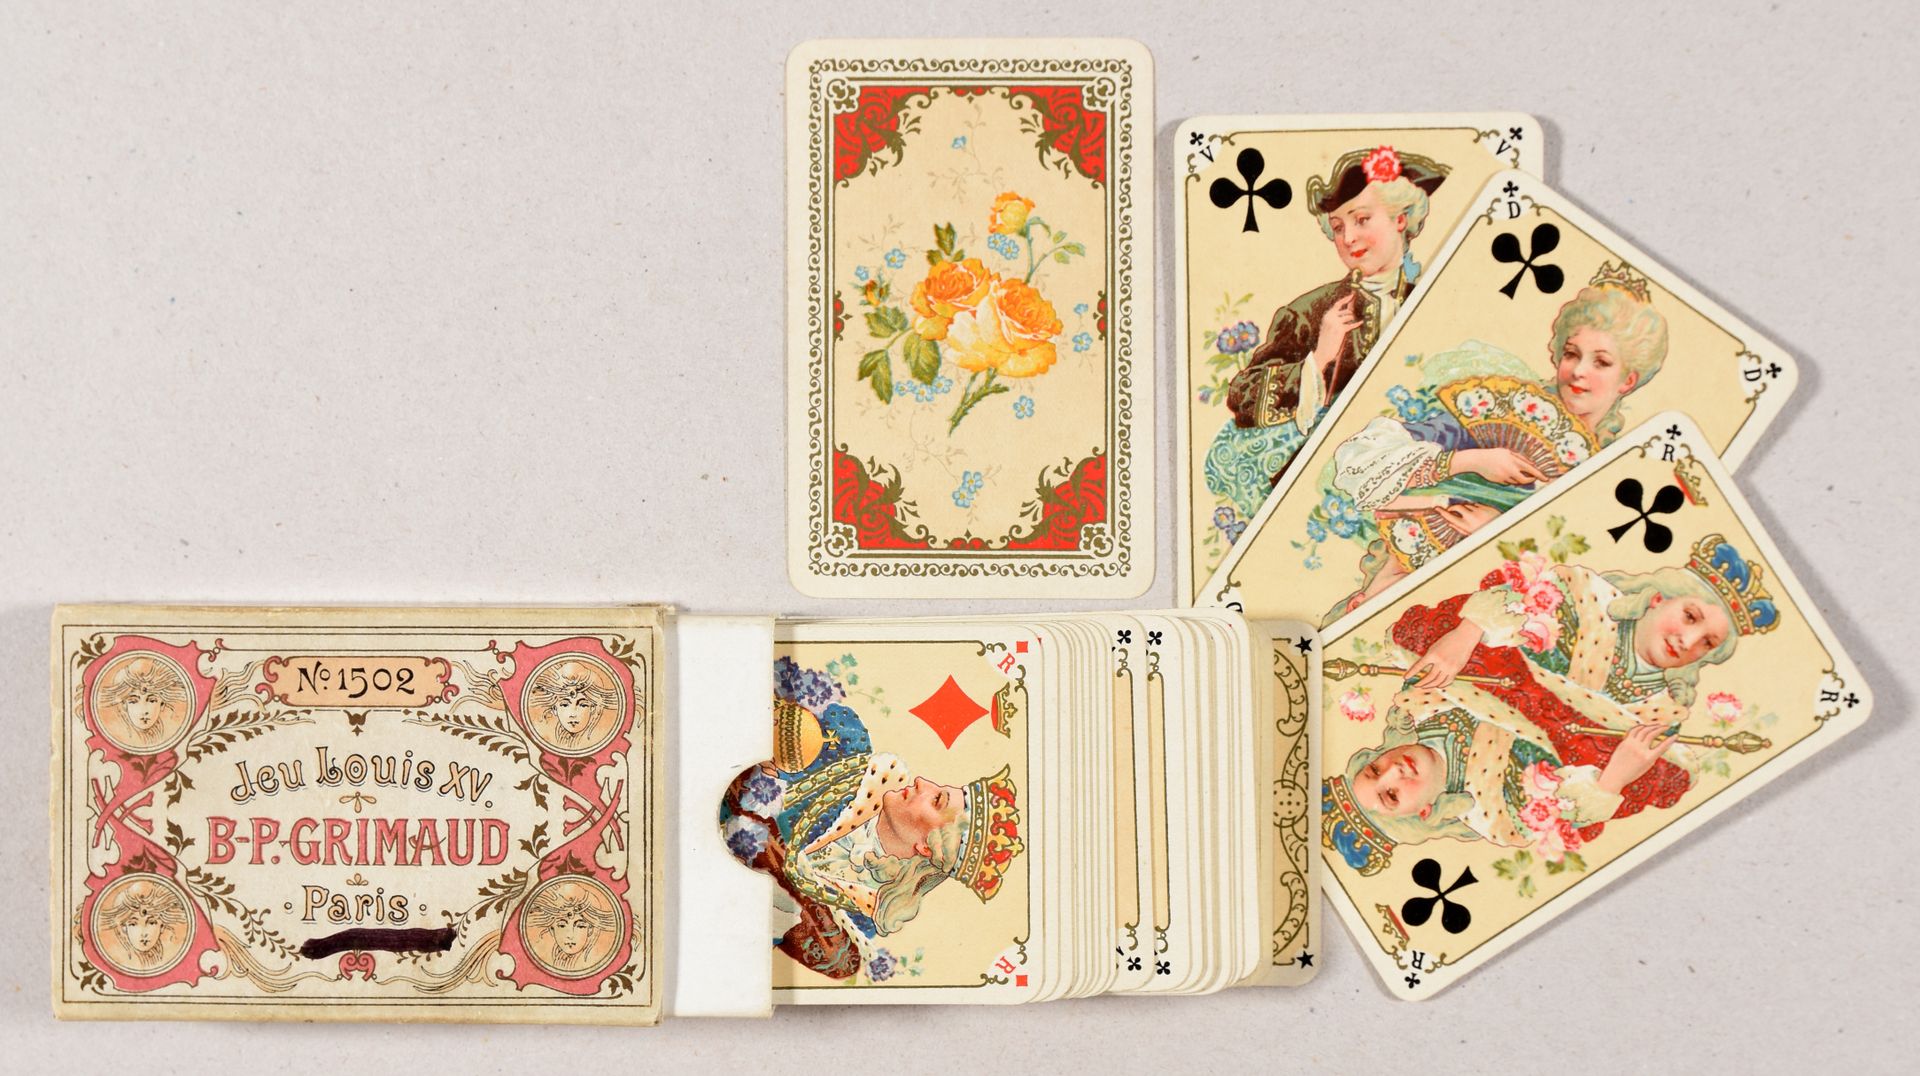 Null "Jeu Louis XV". Paris B.-P. Grimaud [c. 1890] 2 testate, cromolito, 9,2 x 6&hellip;